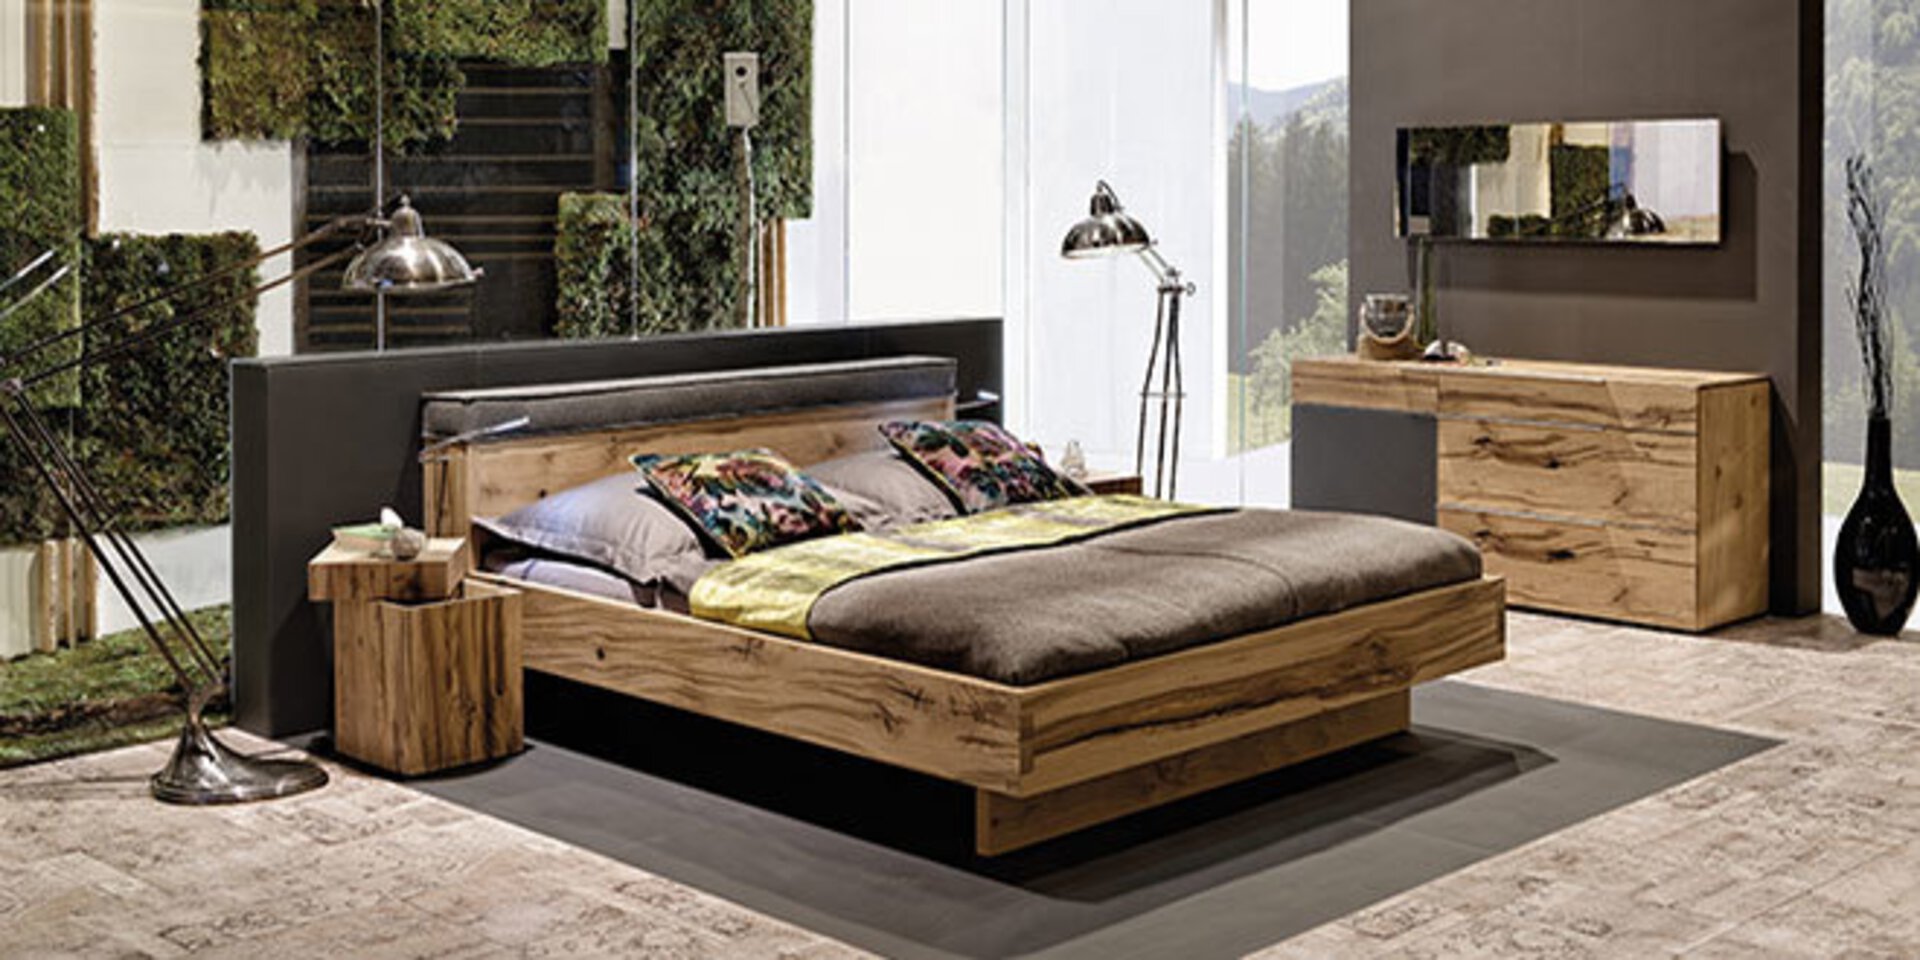 Titelbild der Premiummarke Voglauer - Möbel voller Leben. Abgebildet ist ein Schlafzimmer aus modernen Holzmöbeln.